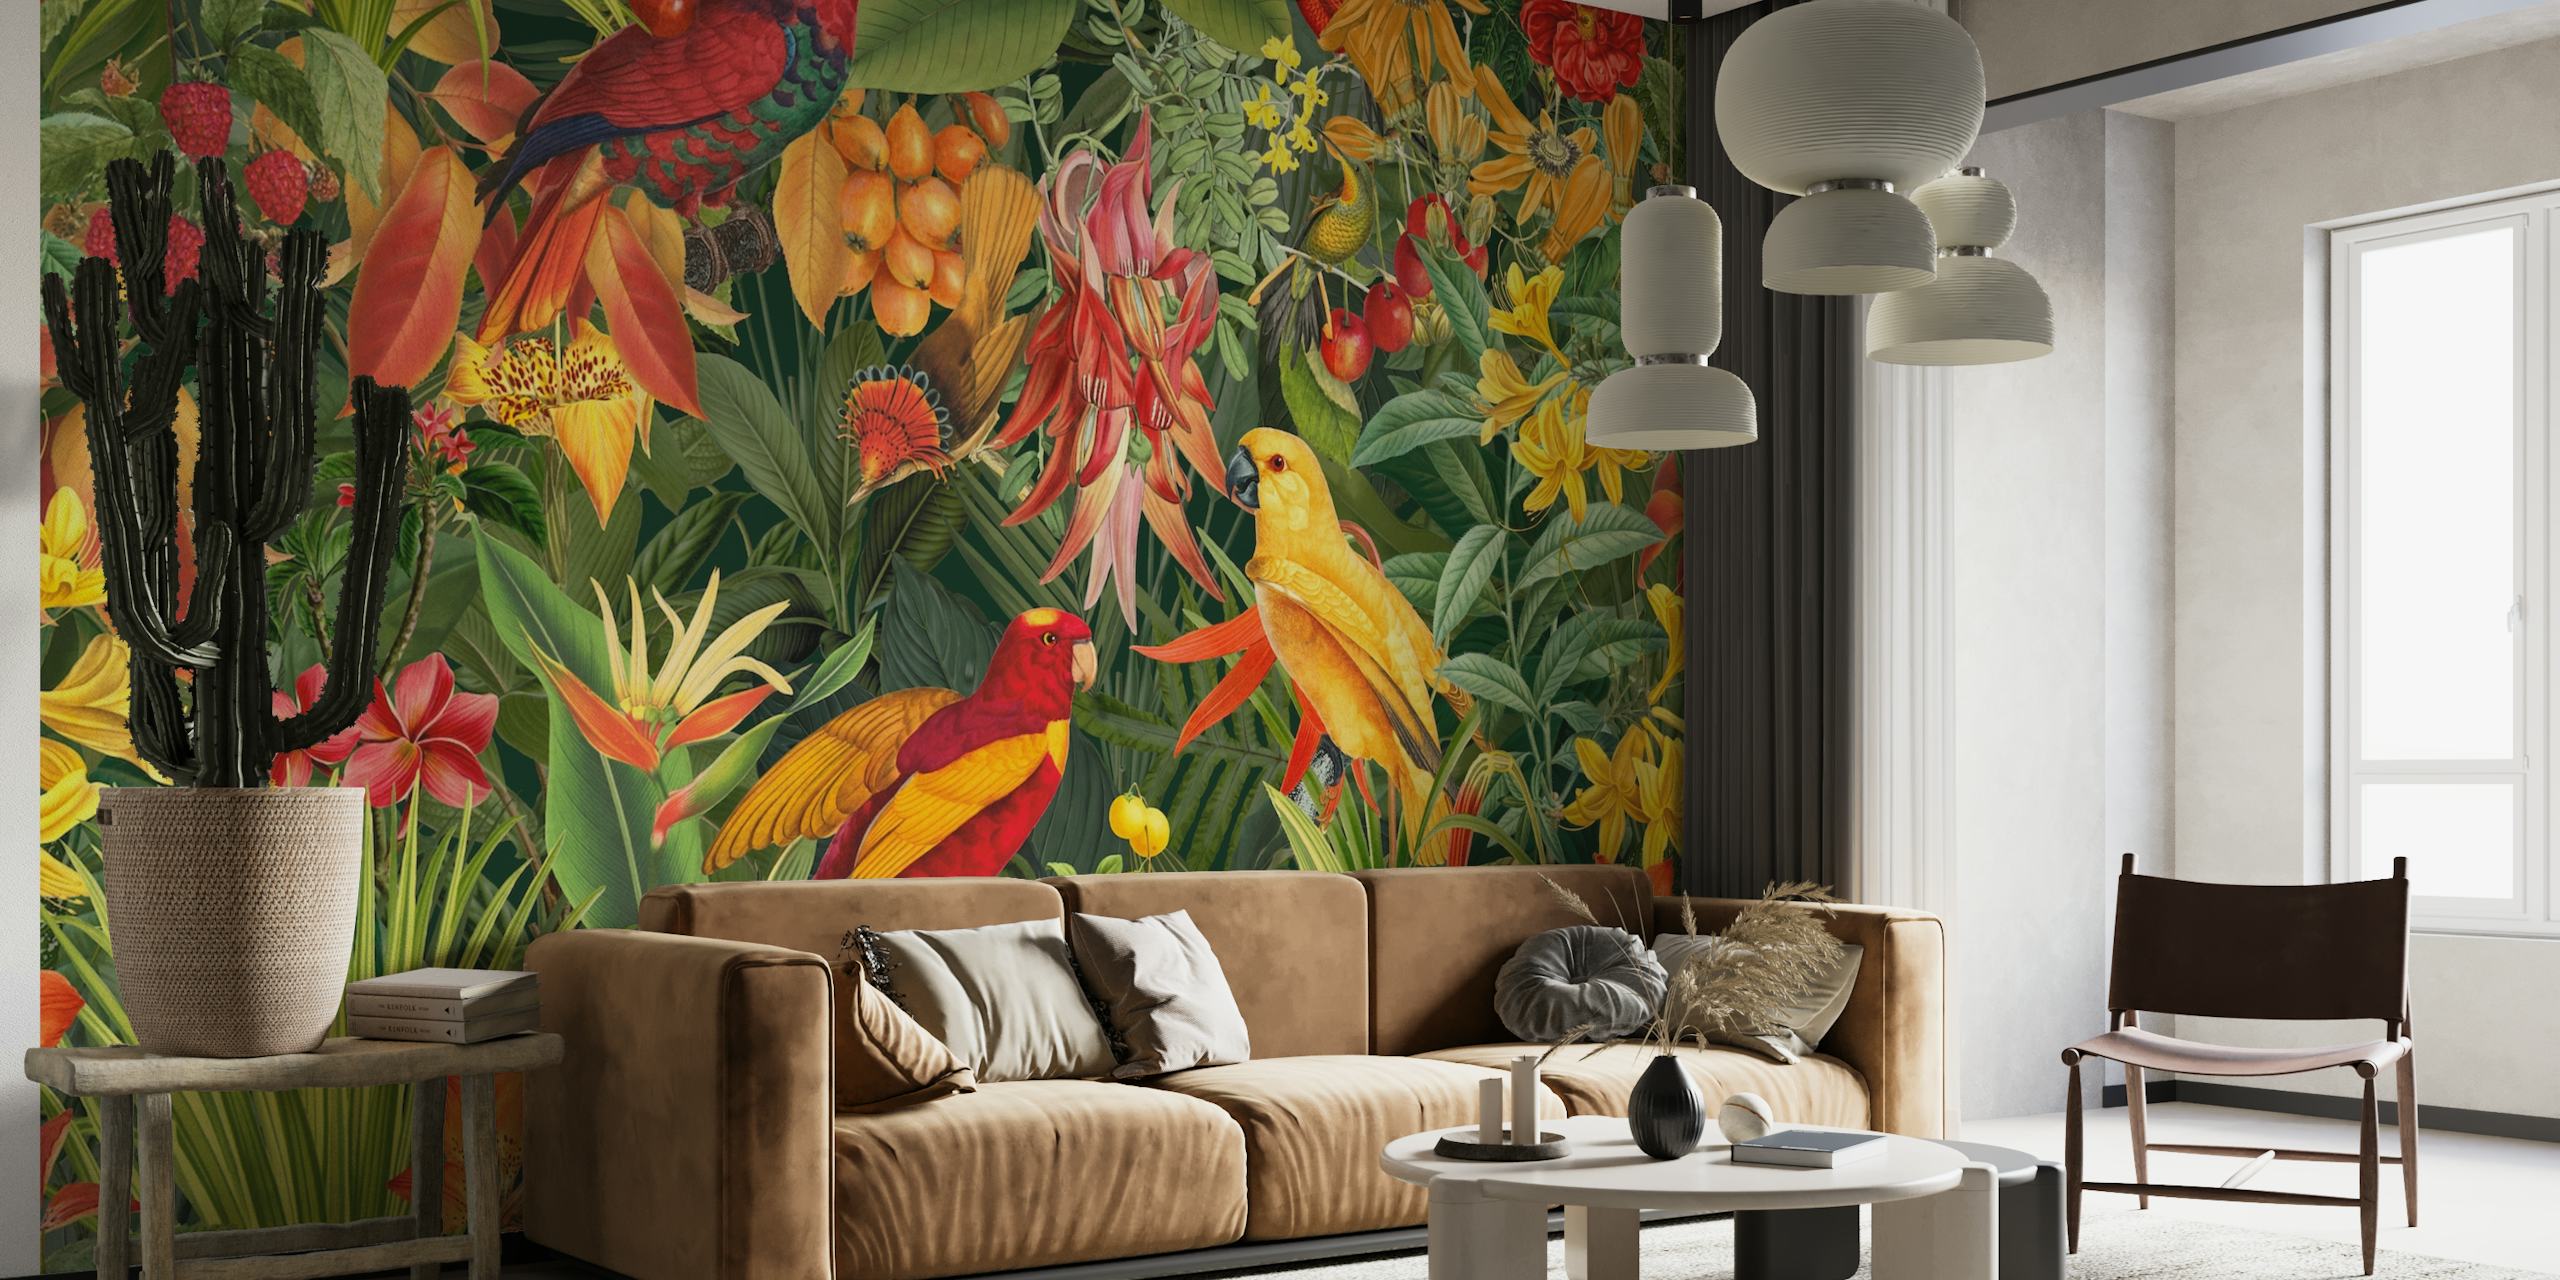 Tropical Parrots Jungle Garden papel pintado